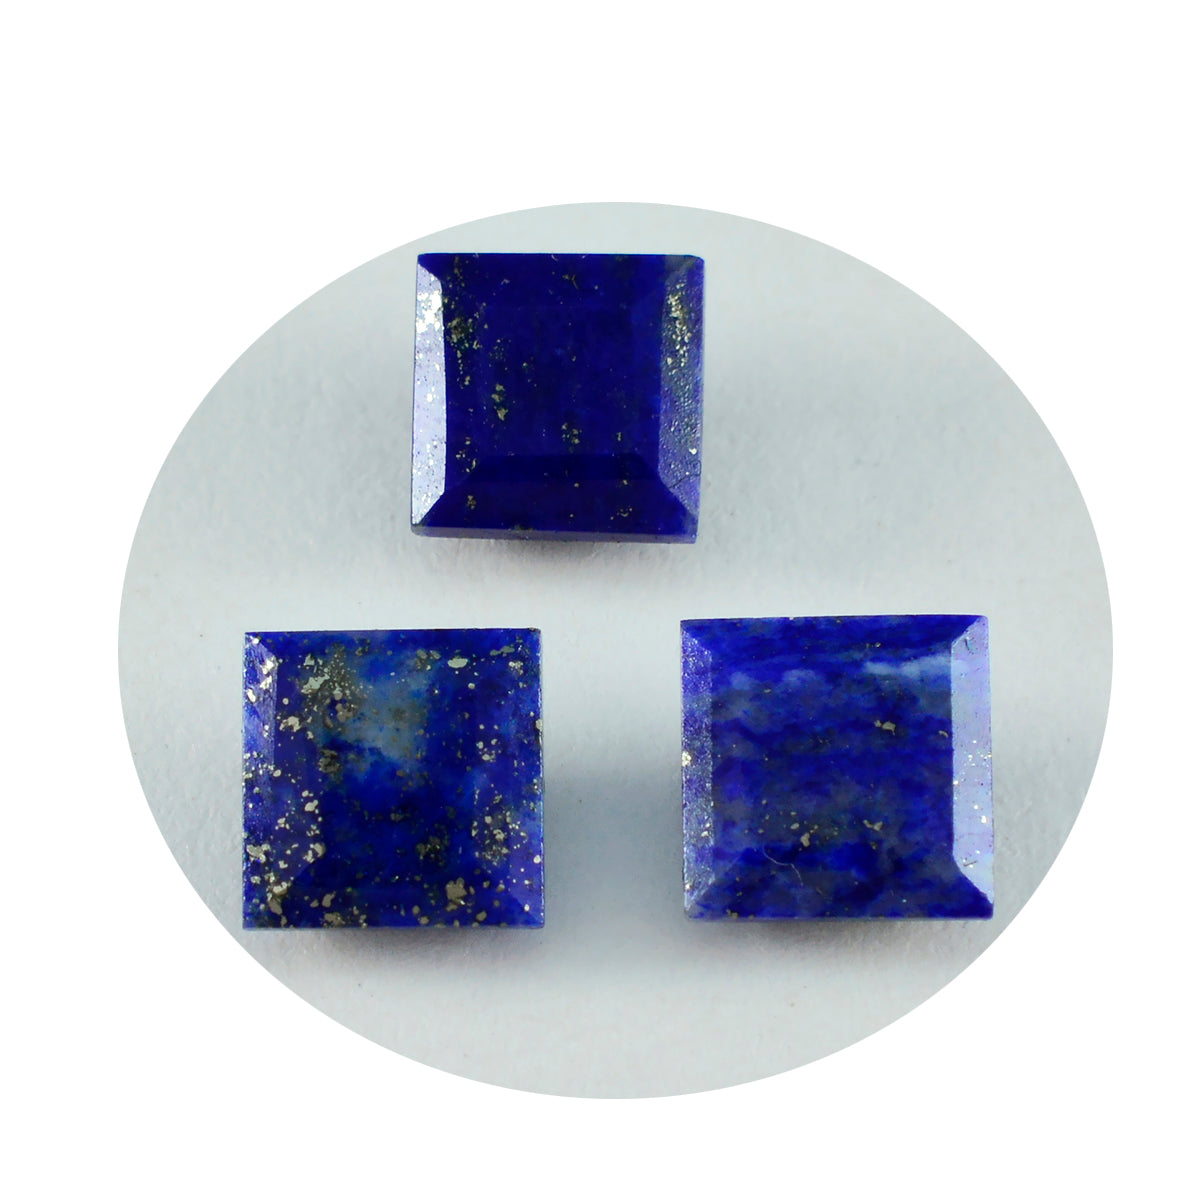 Riyogems 1 Stück echter blauer Lapislazuli, facettiert, 10 x 10 mm, quadratische Form, schöne Qualität, loser Edelstein